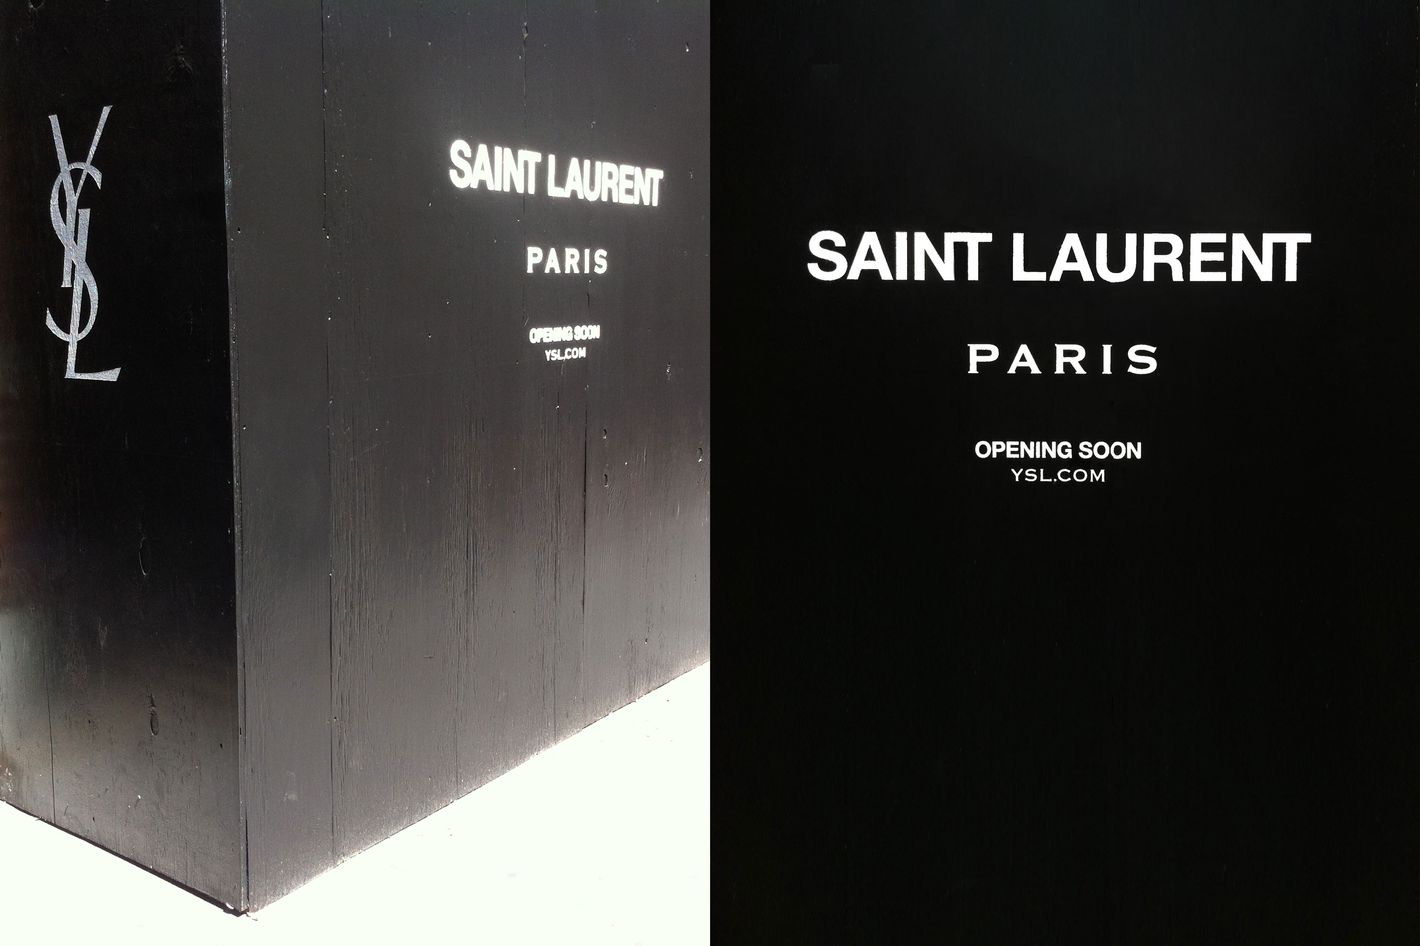 Facebook Commenters Horrified by the New 'Saint Laurent Paris' Logo